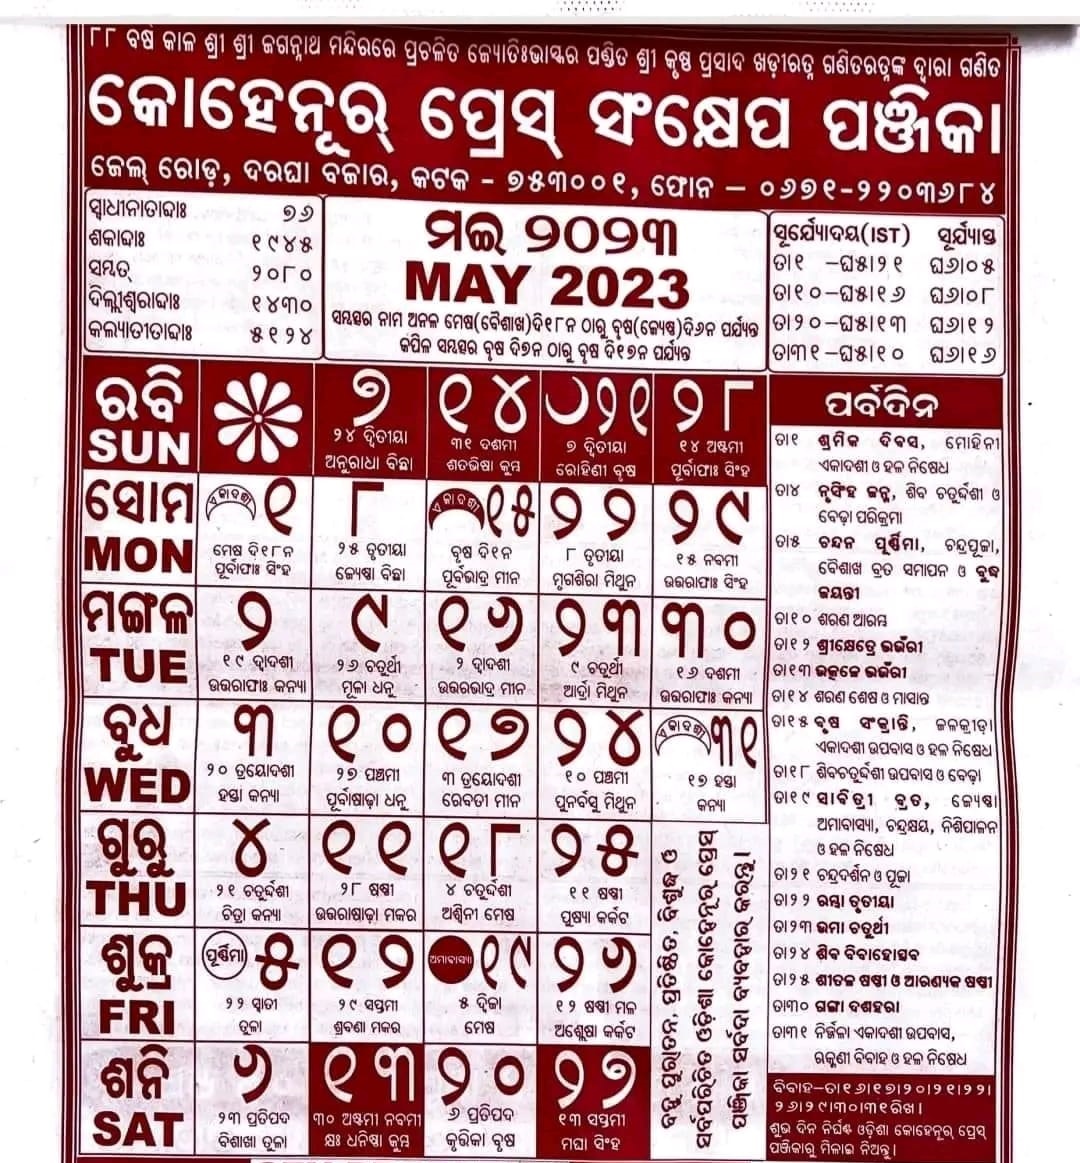 kohinoor-odia-calendar-may-2023-nijuktiodisha-in